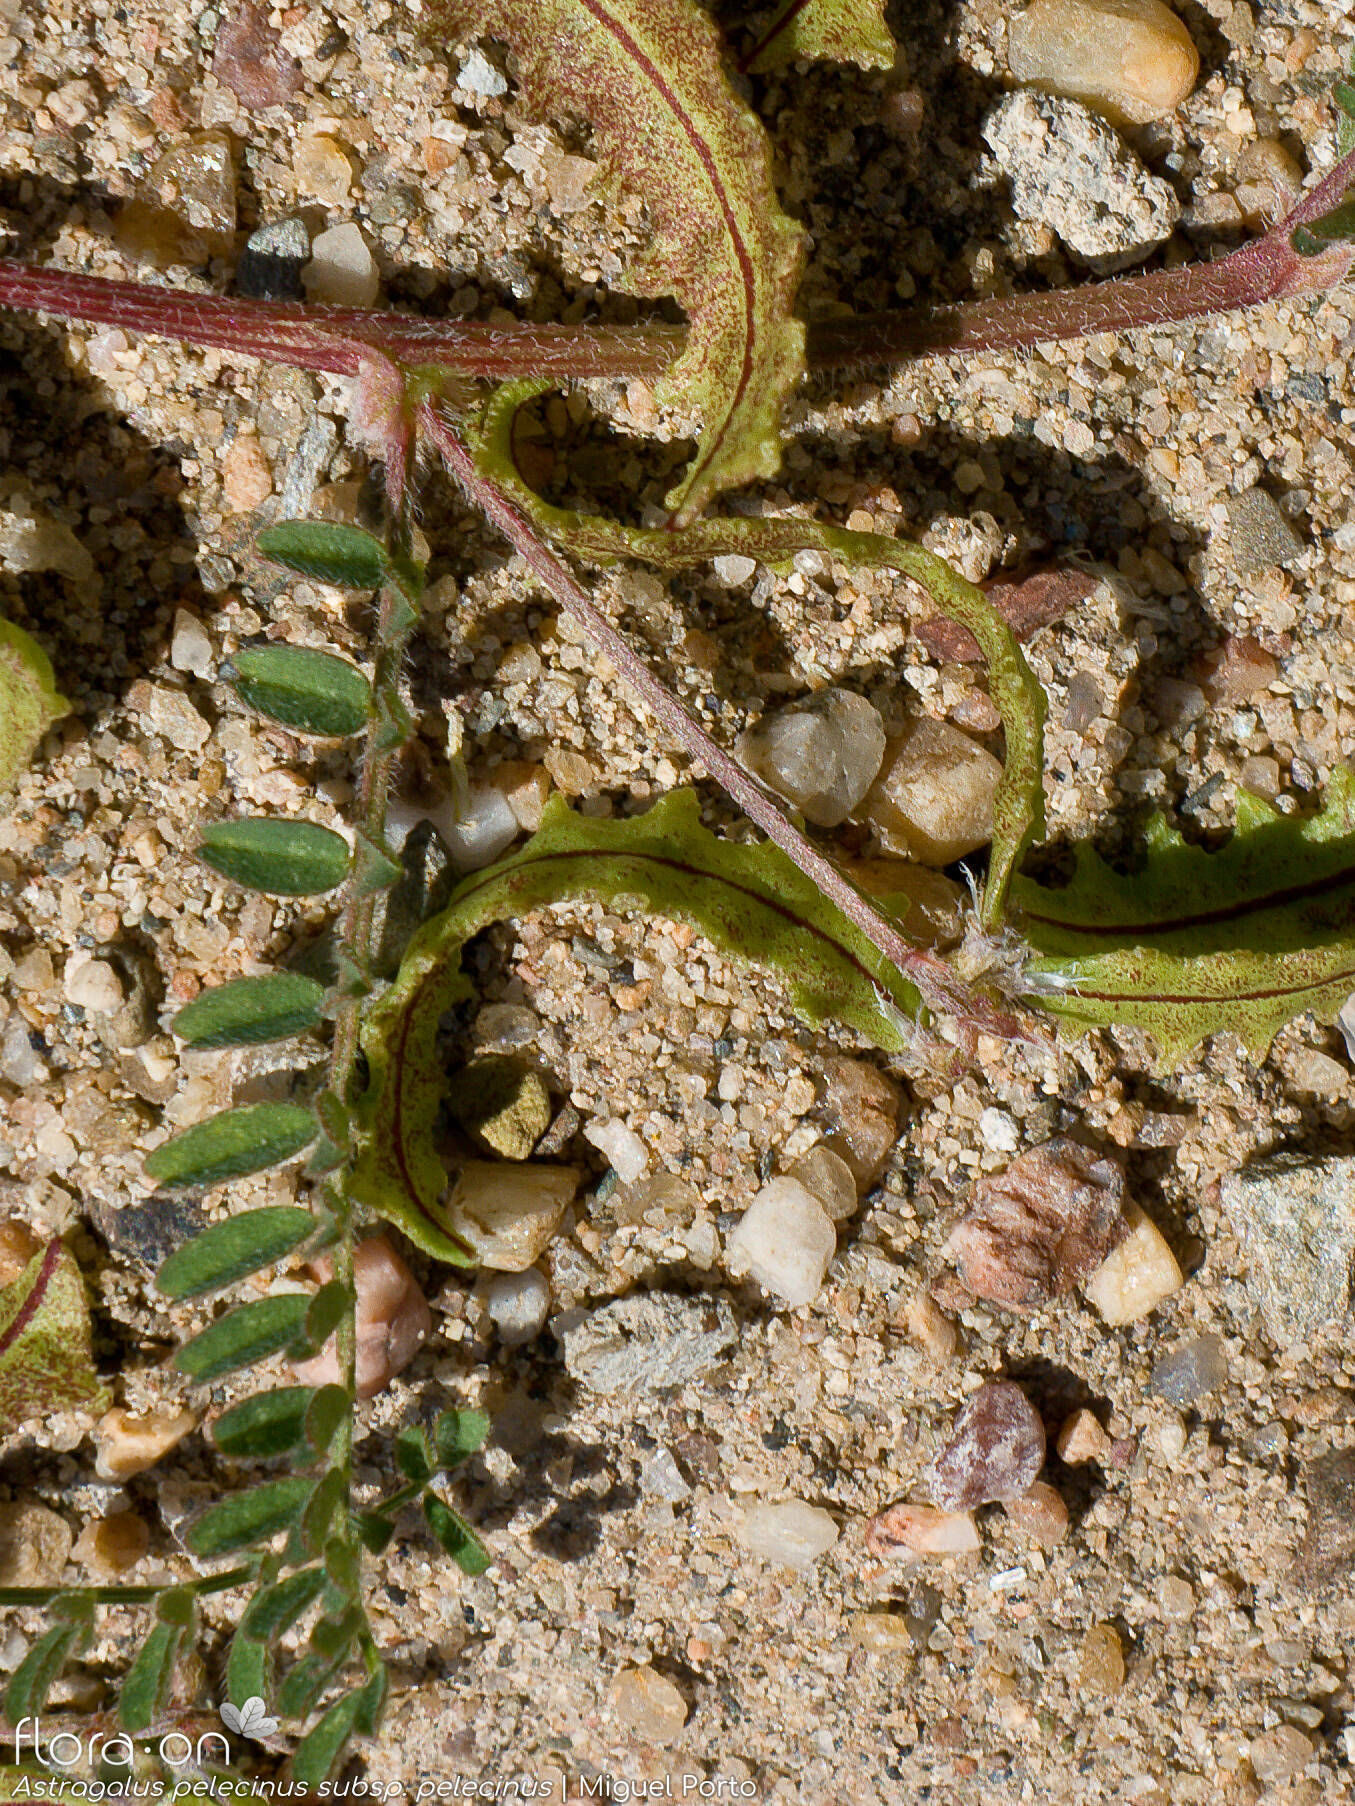 Astragalus pelecinus pelecinus - Fruto | Miguel Porto; CC BY-NC 4.0